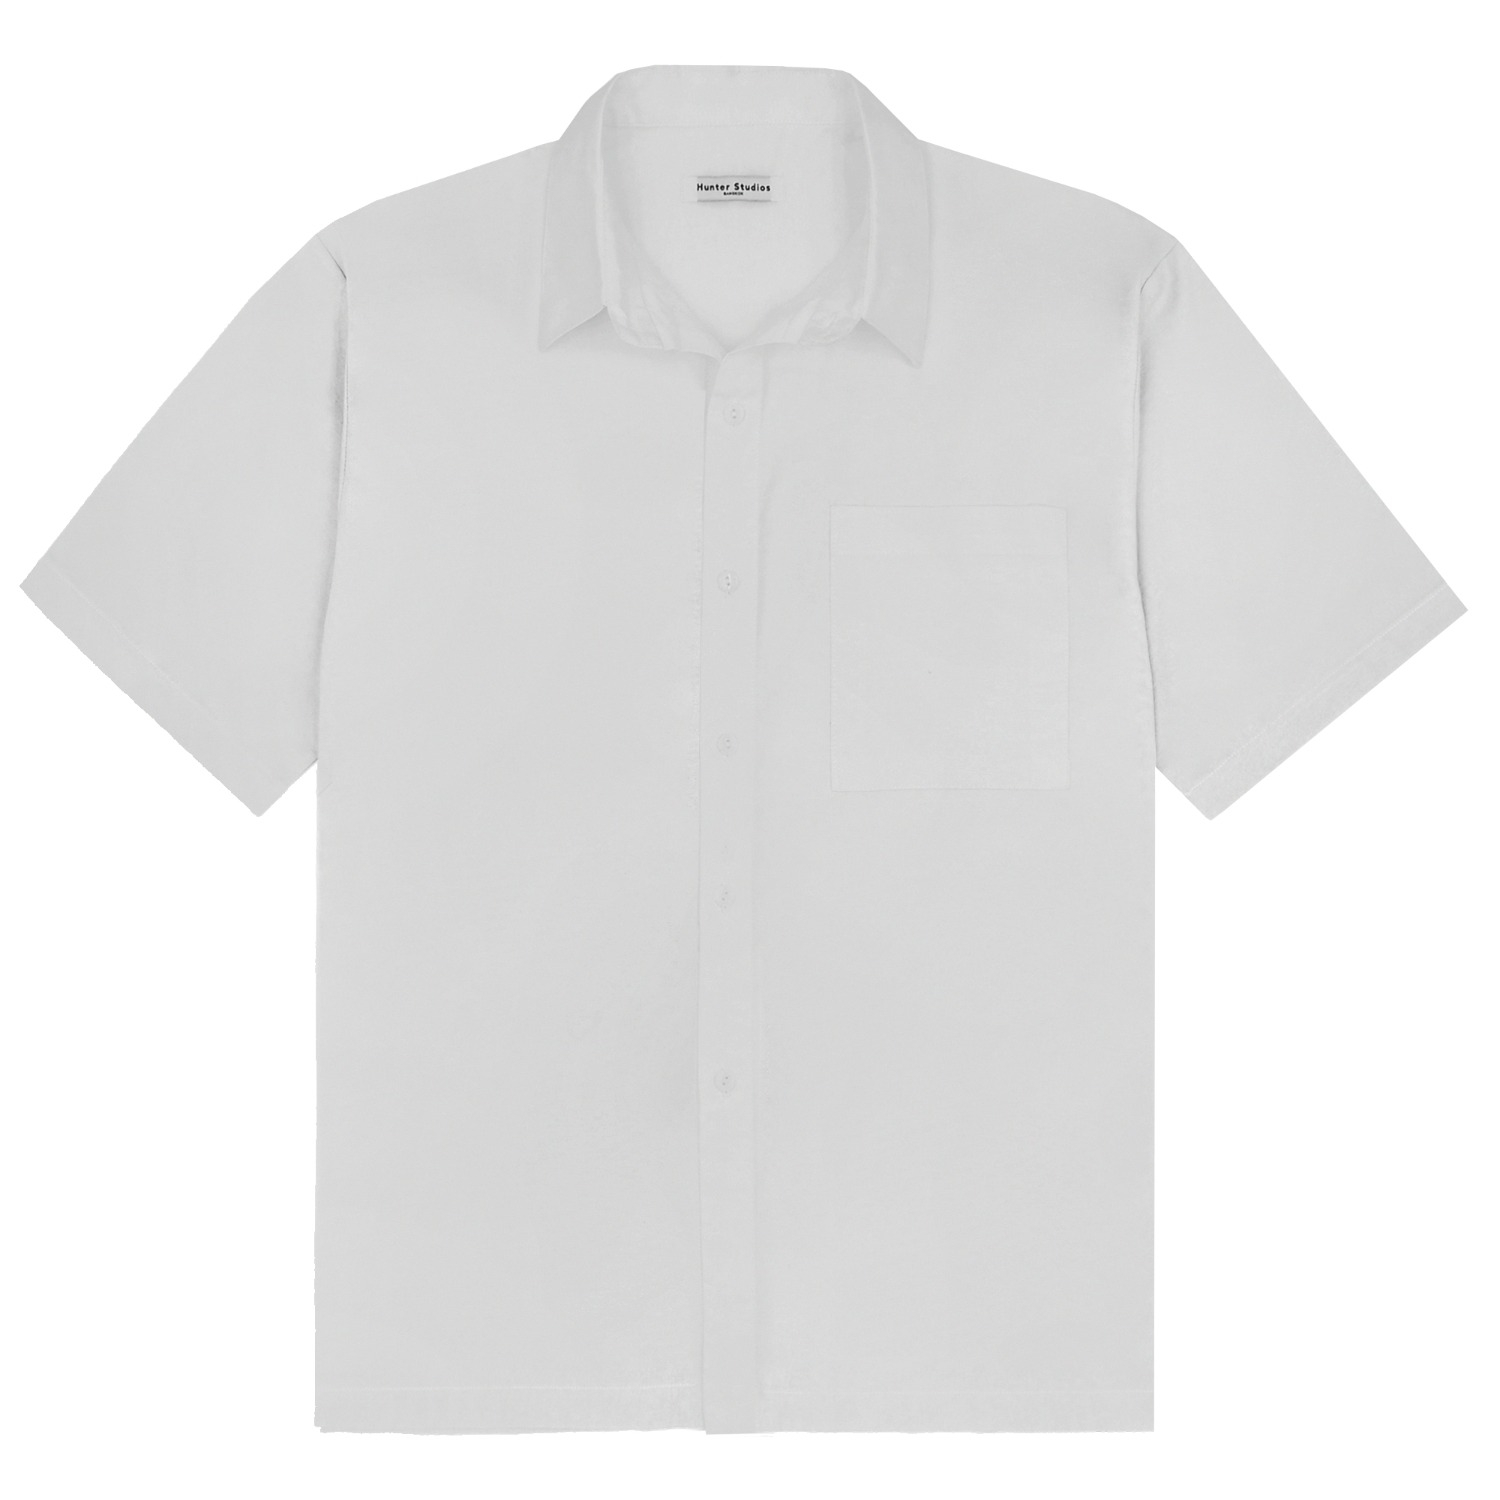 Fainly Shirt (White)